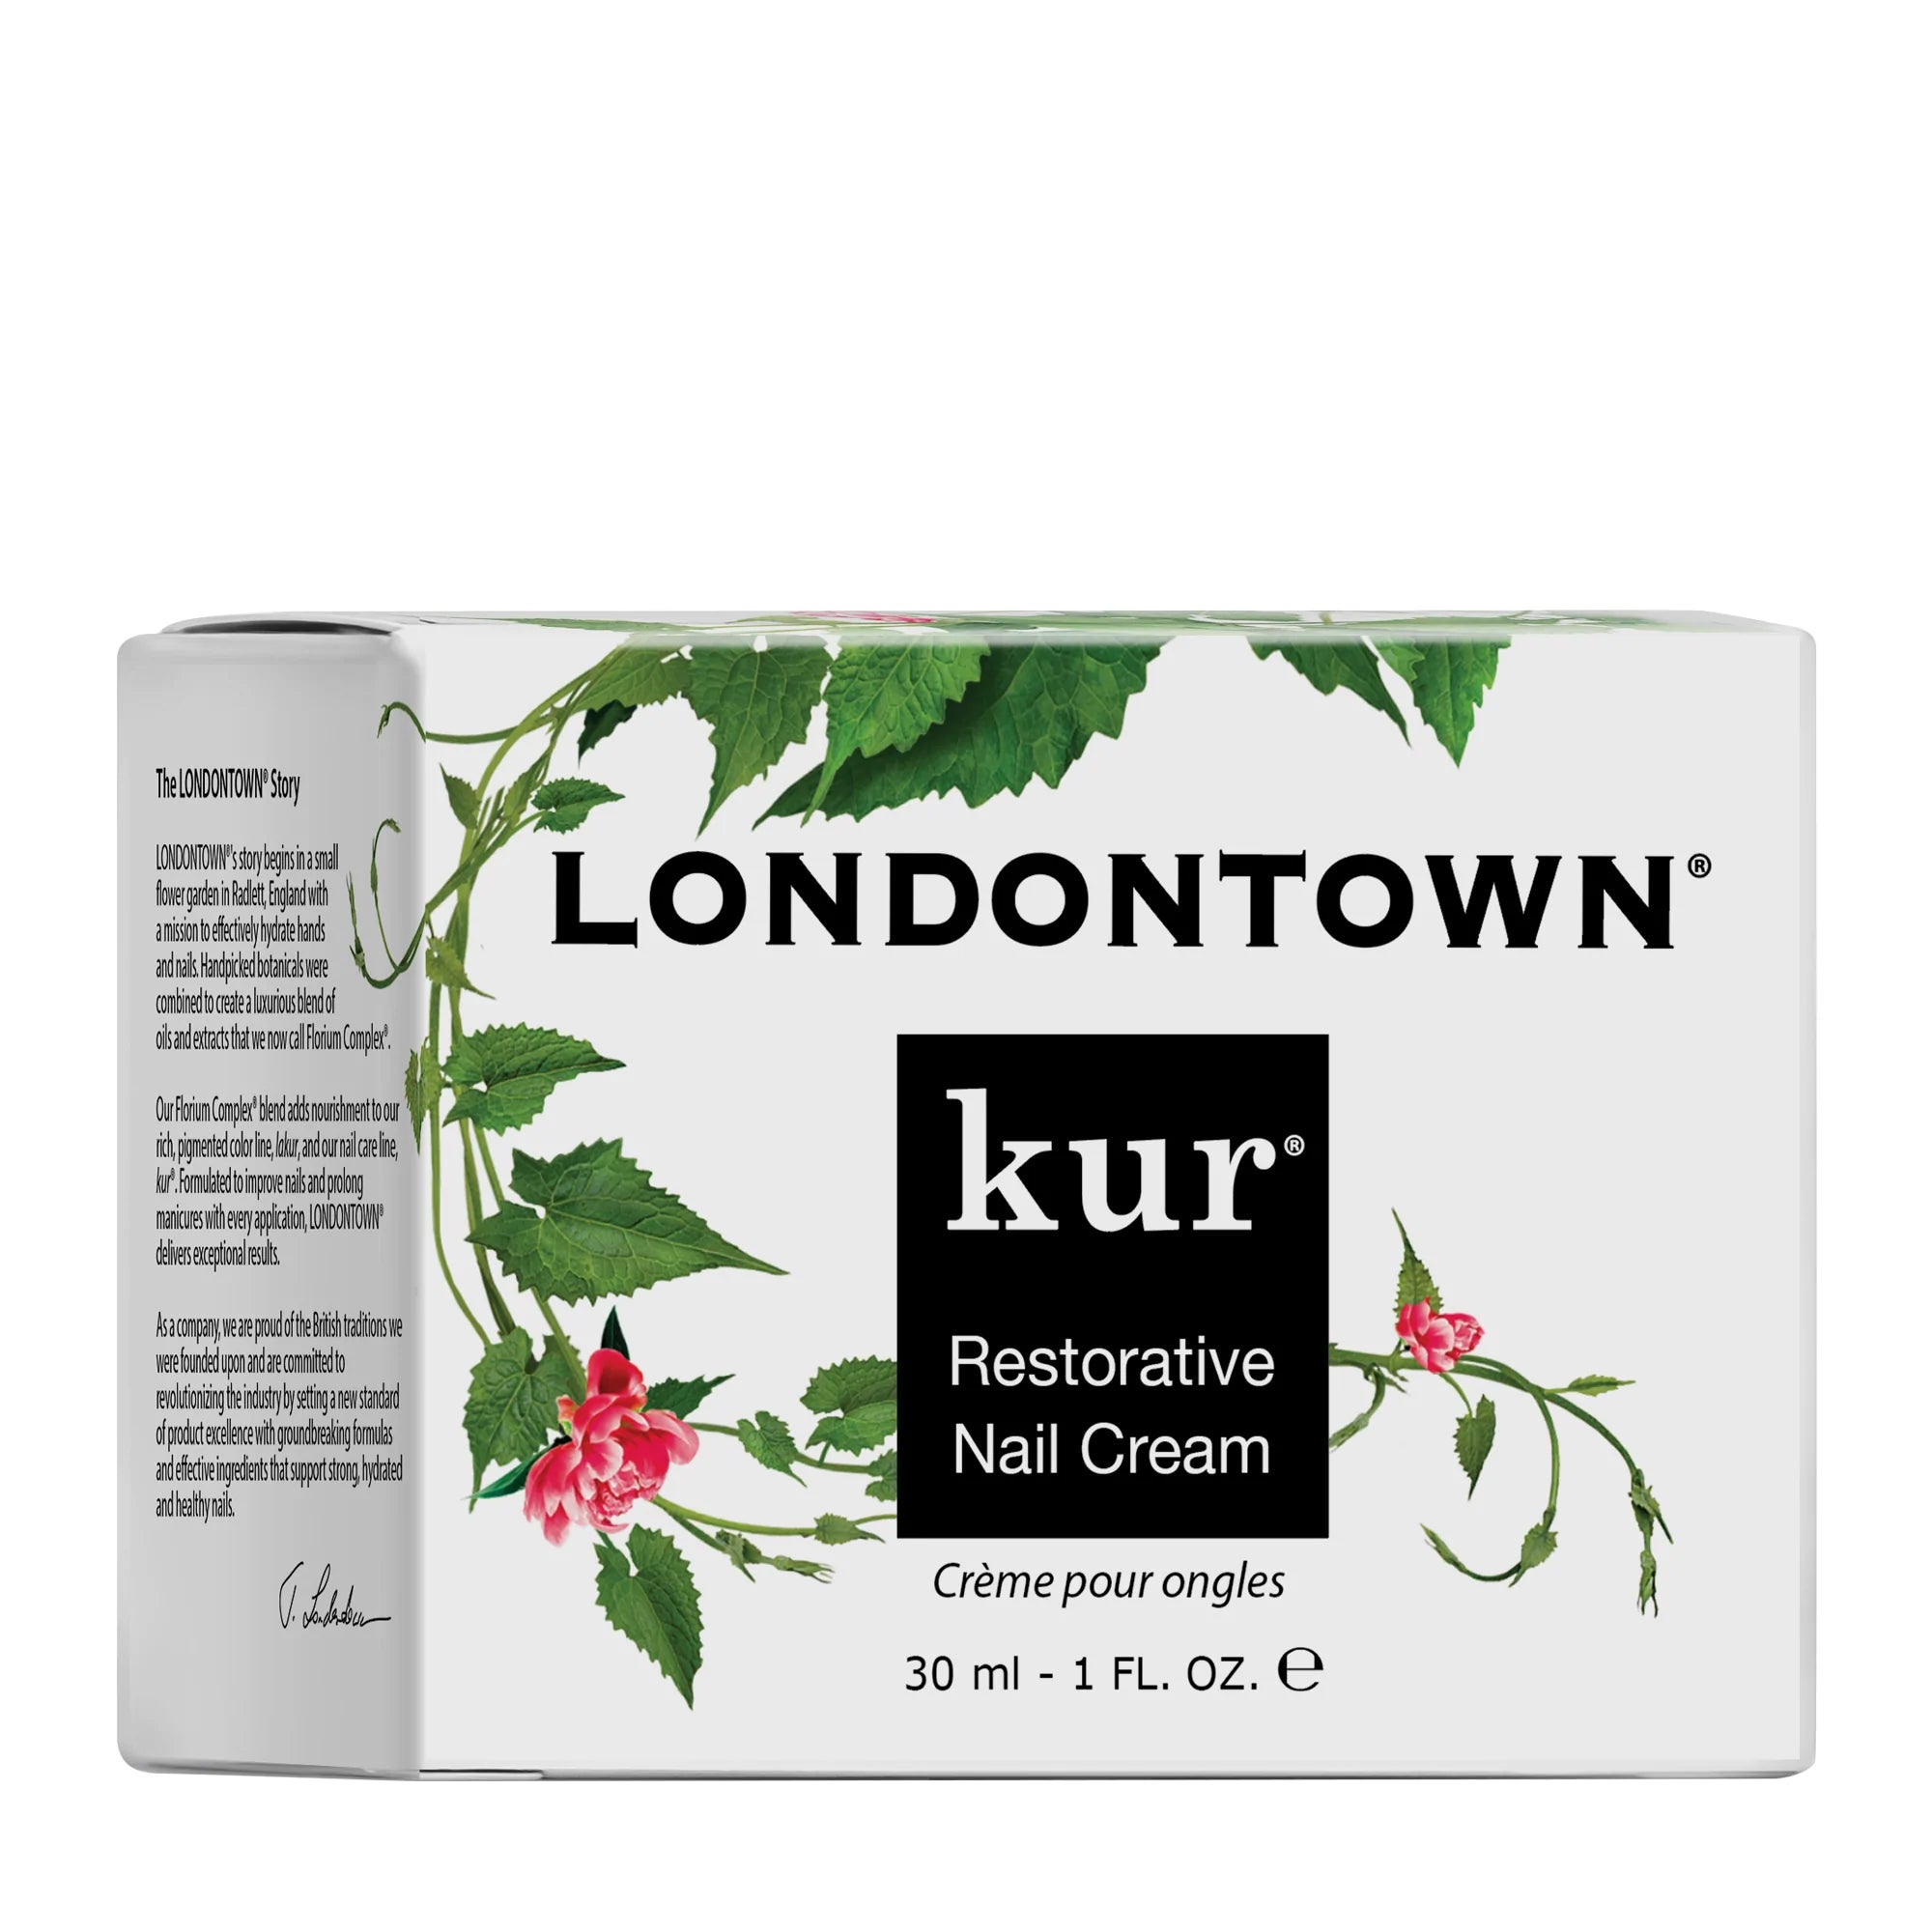  Restorative Nail Cream by LONDONTOWN LONDONTOWN Perfumarie